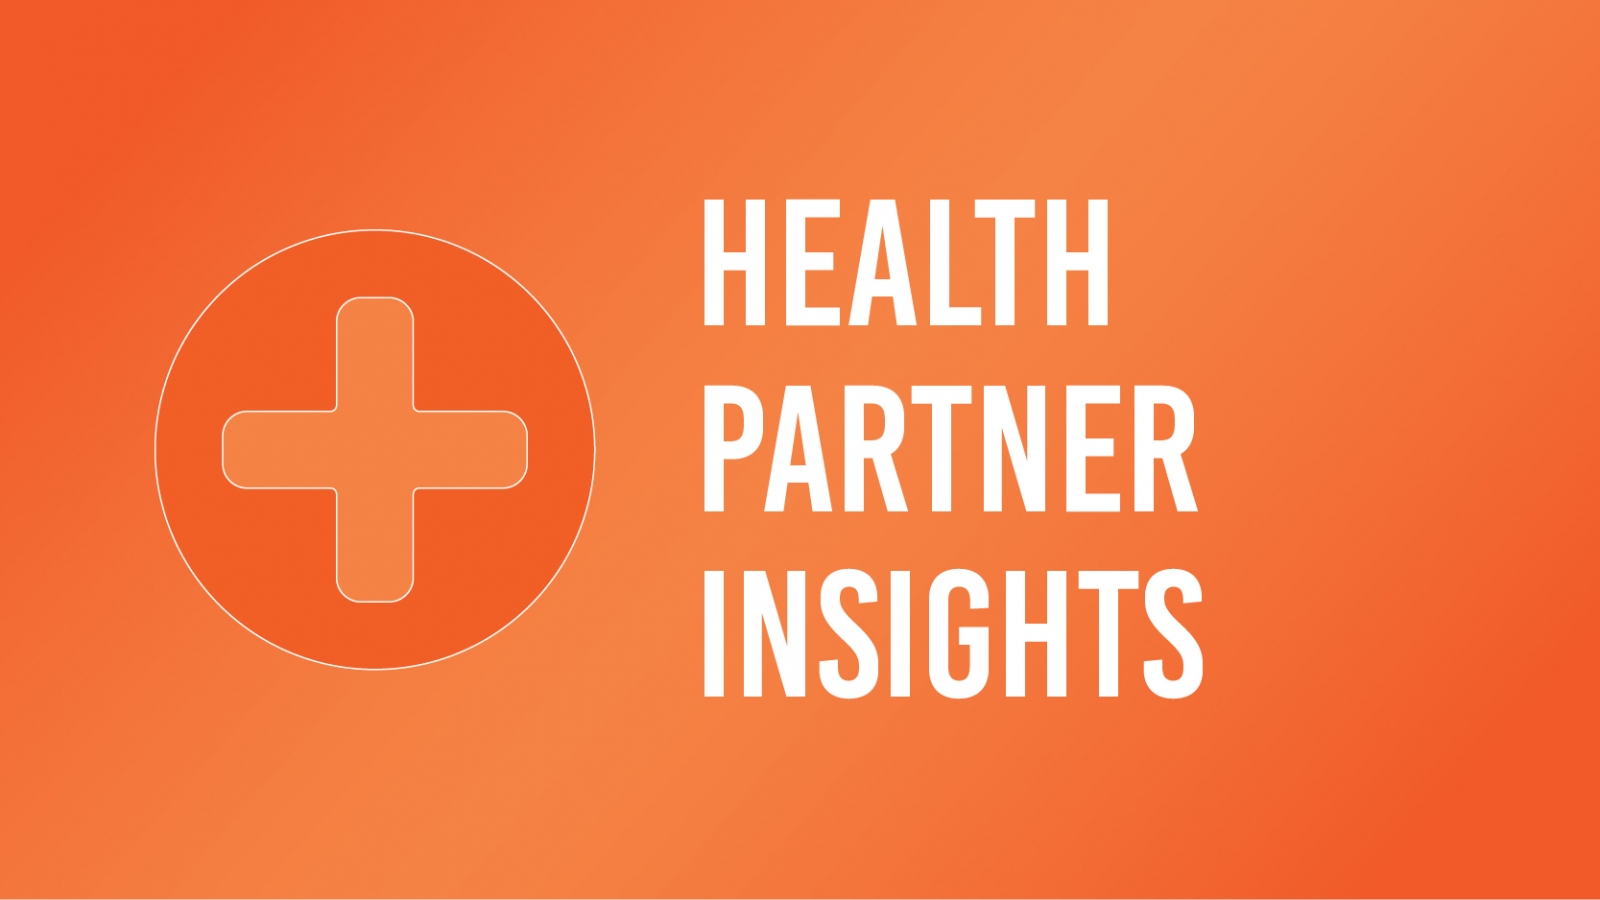 Health Partner Insights